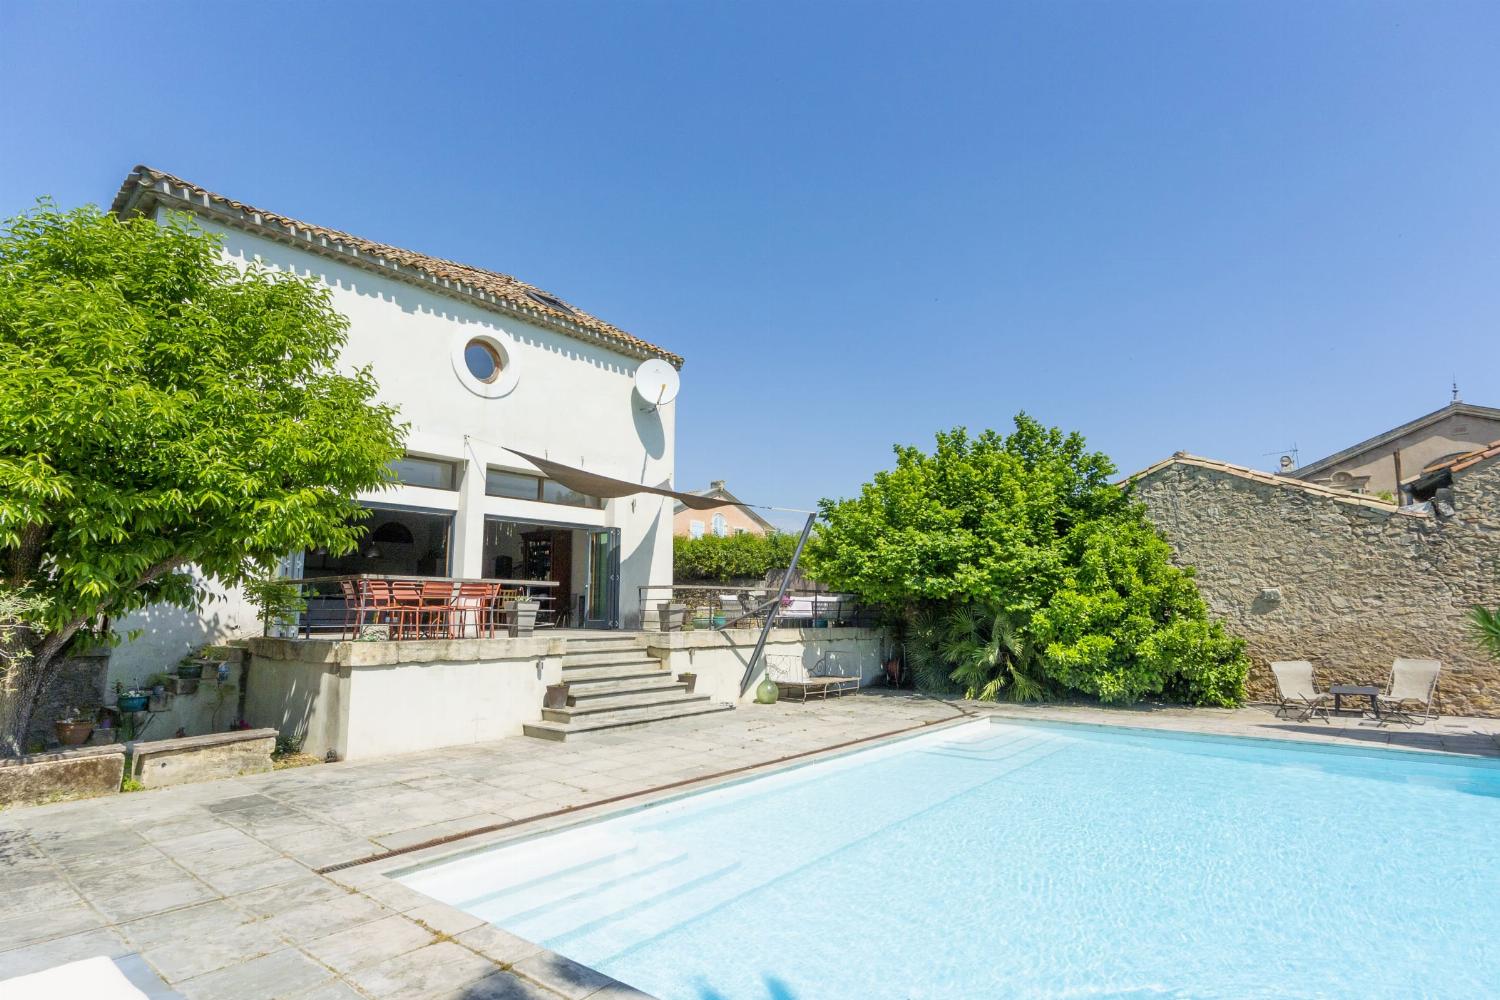 Maison de vacances dans le sud de la France avec piscine privée à débordement